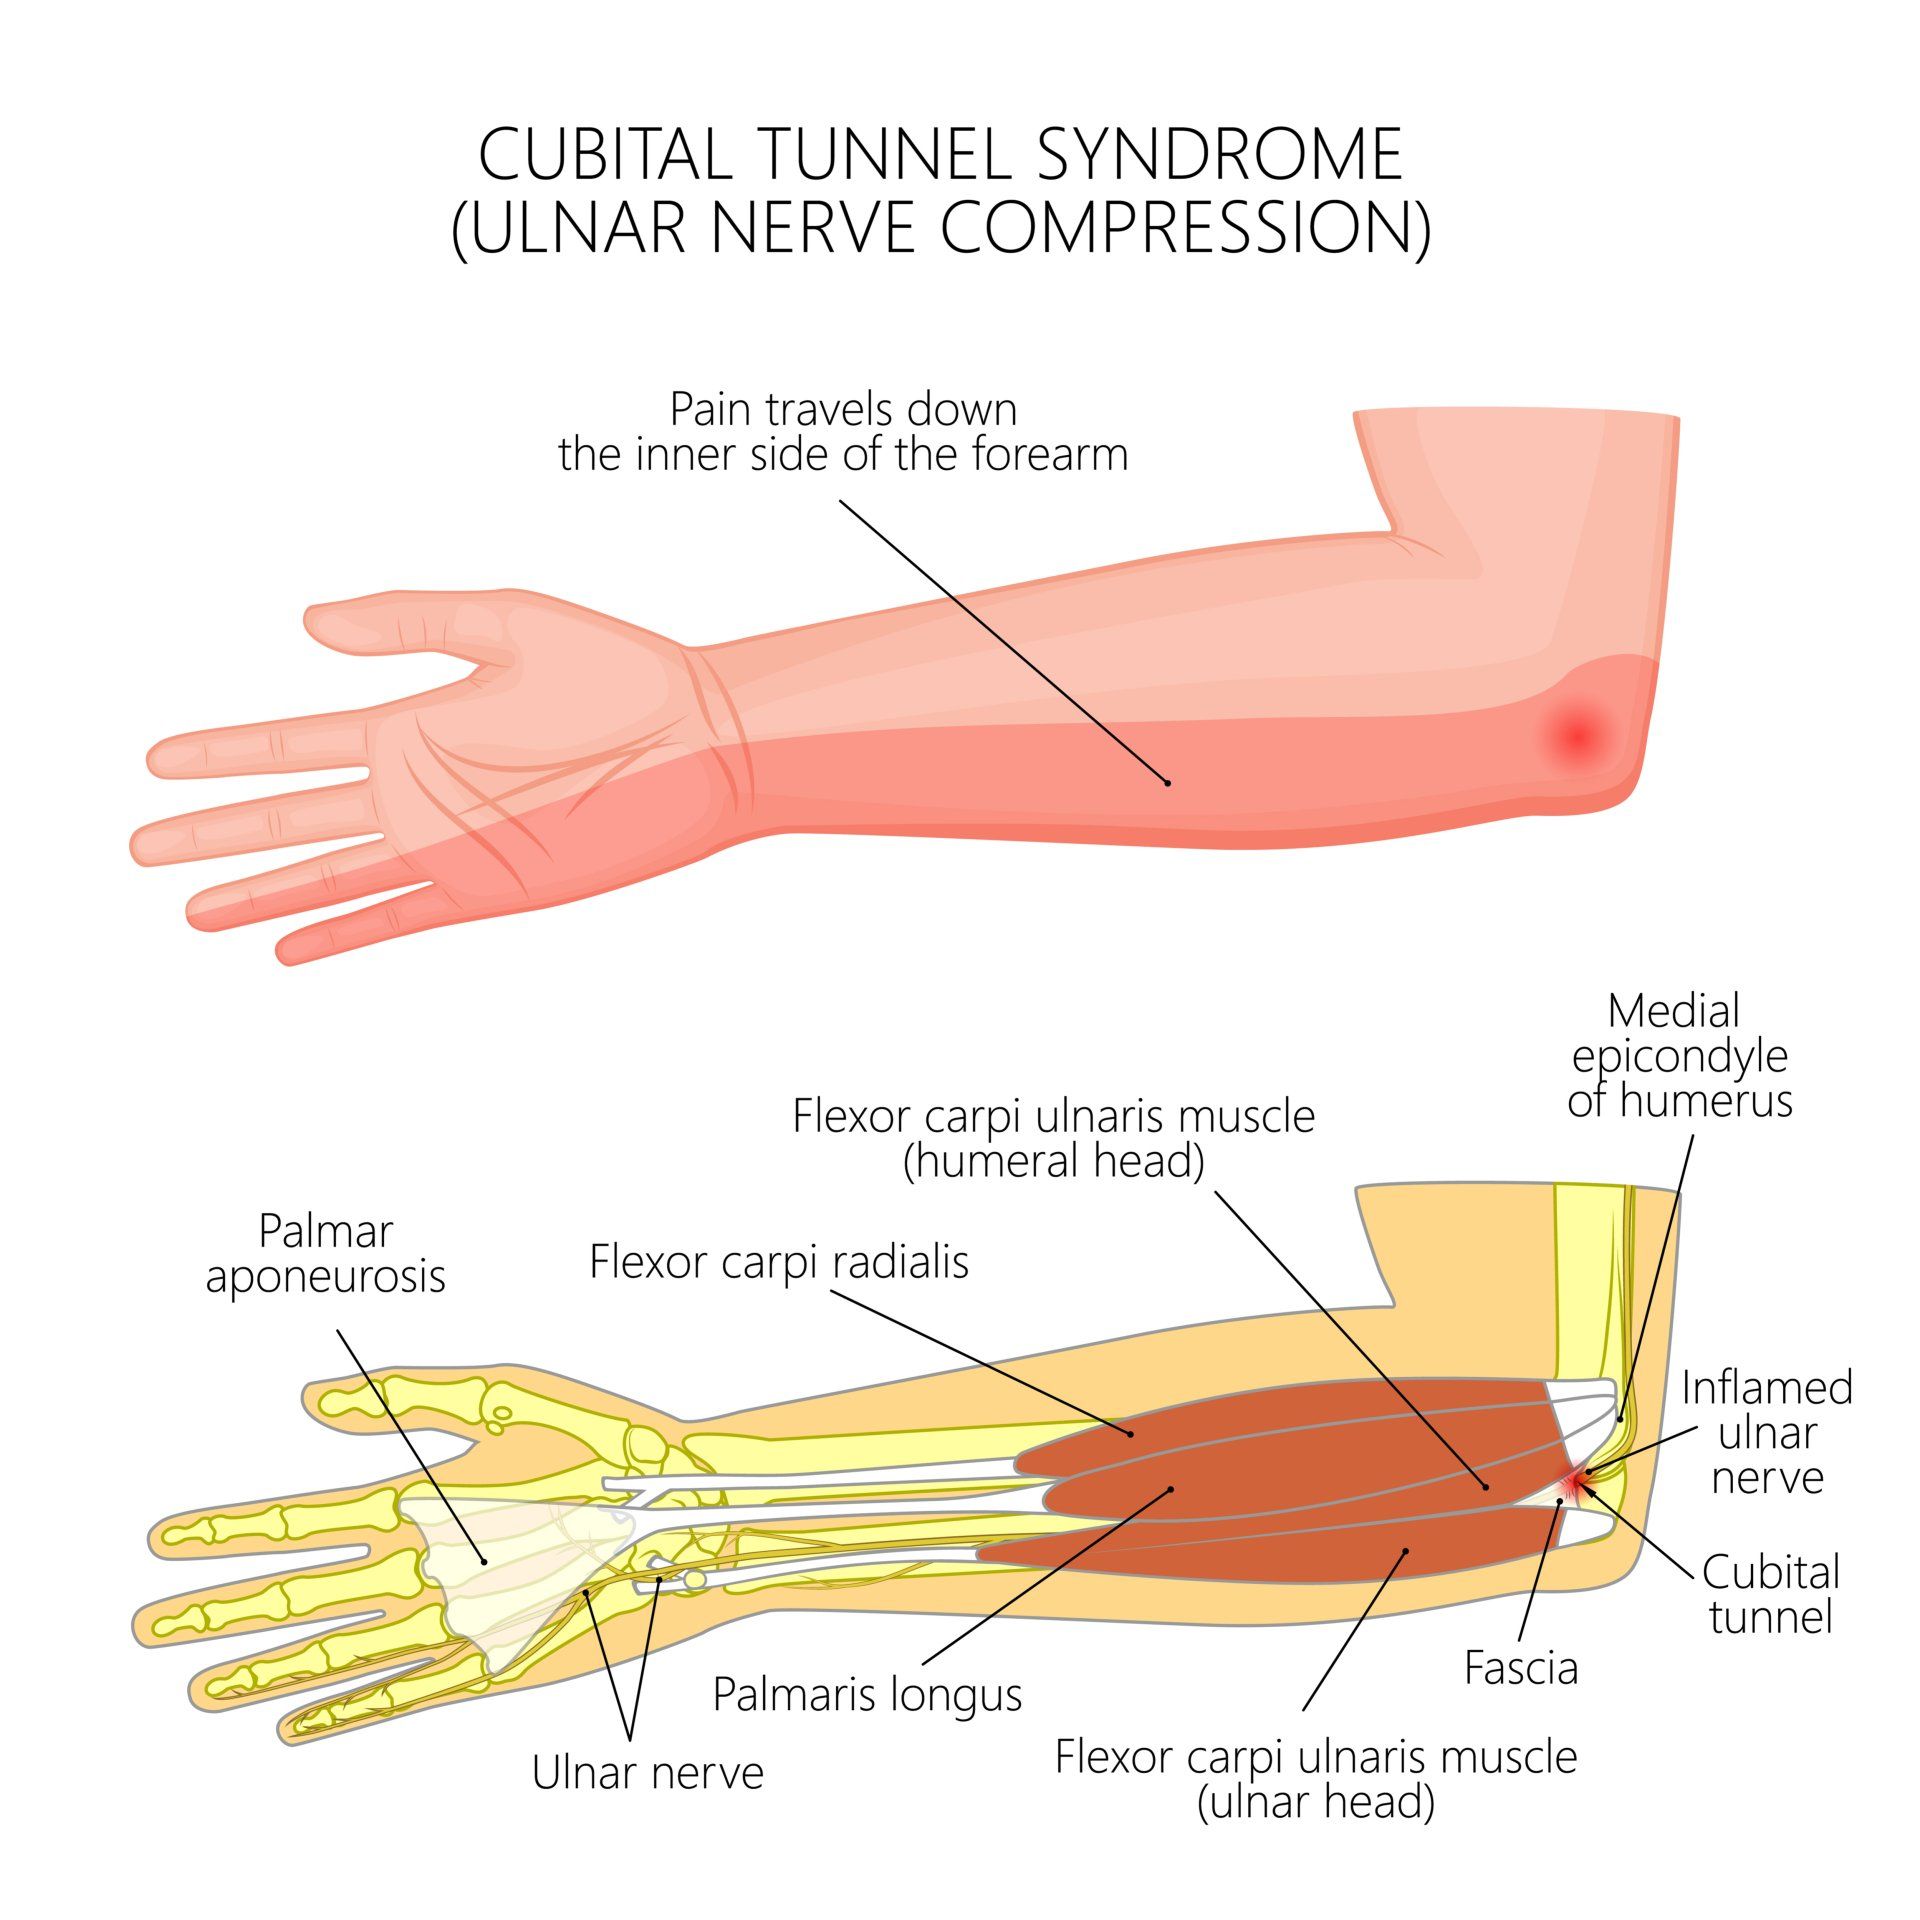 Ulnar nerve compression